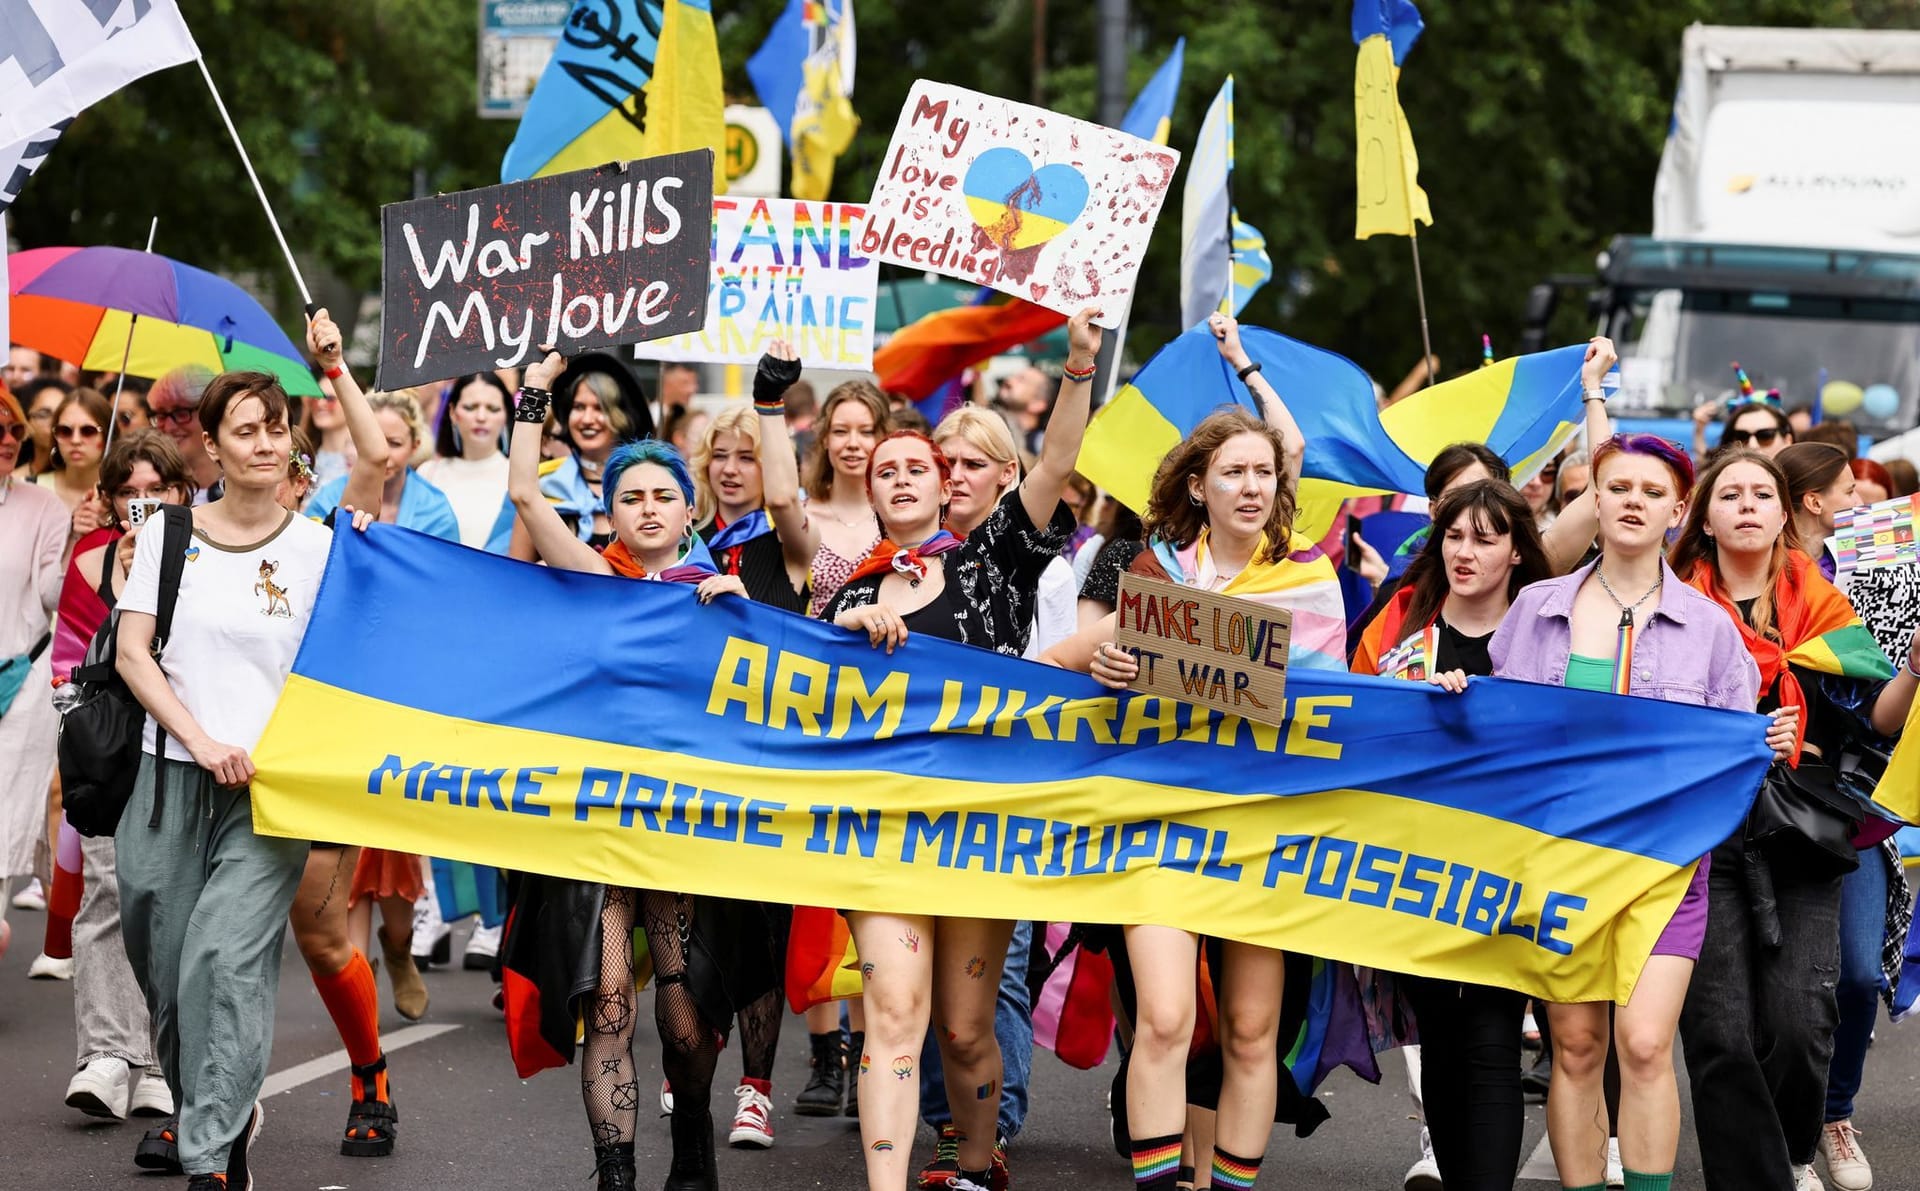 Teilnehmende demonstrieren gegen die russische Invasion: Ukrainische Geflüchtete haben einen Paradewagen gestellt bekommen.